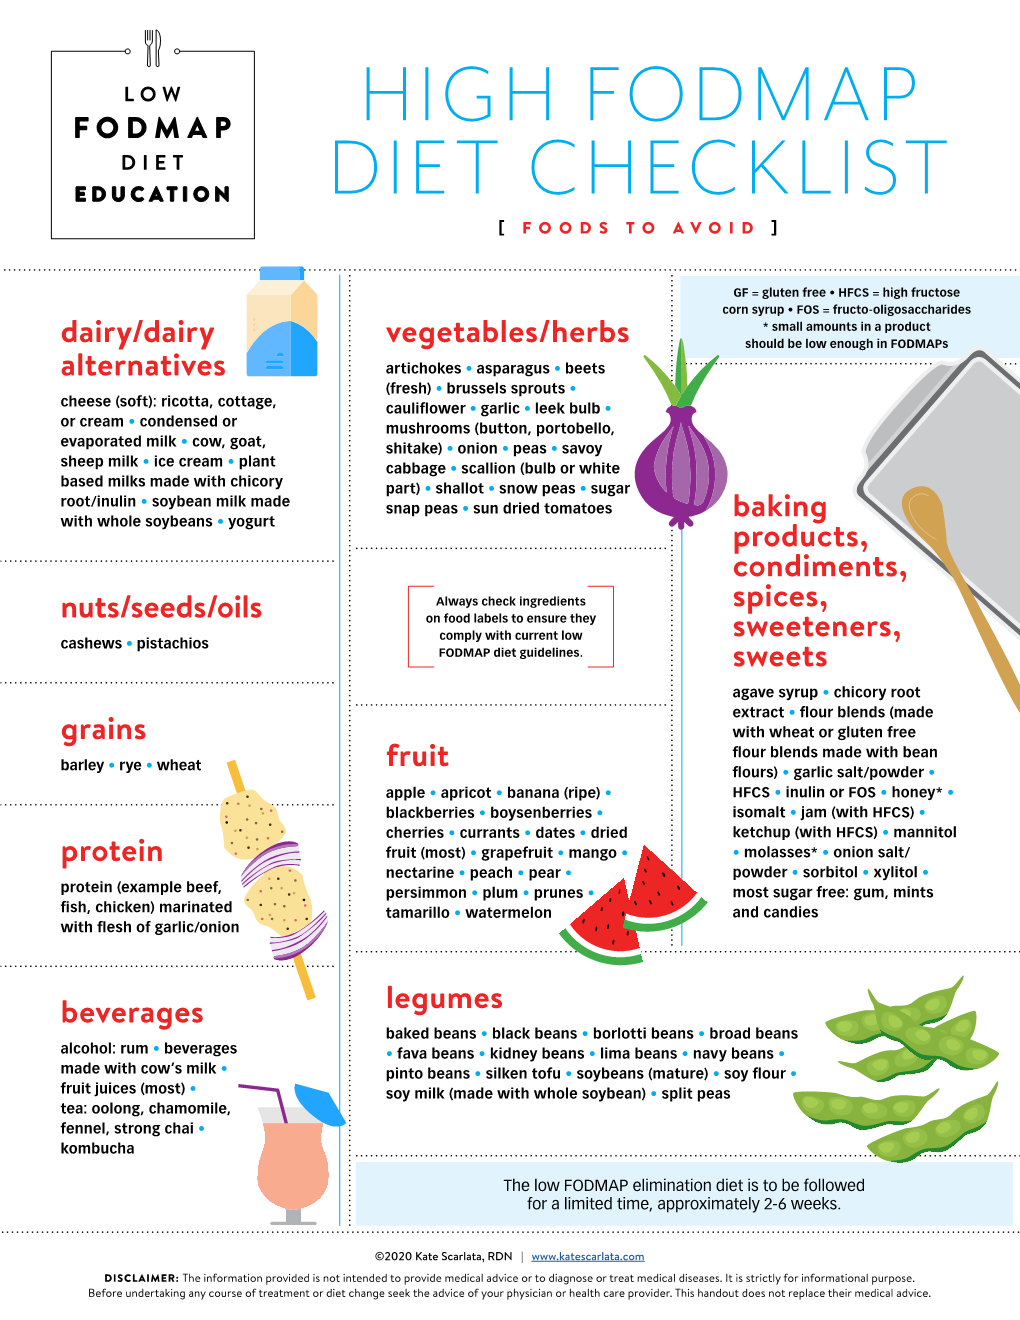 High Fodmap Diet Checklist